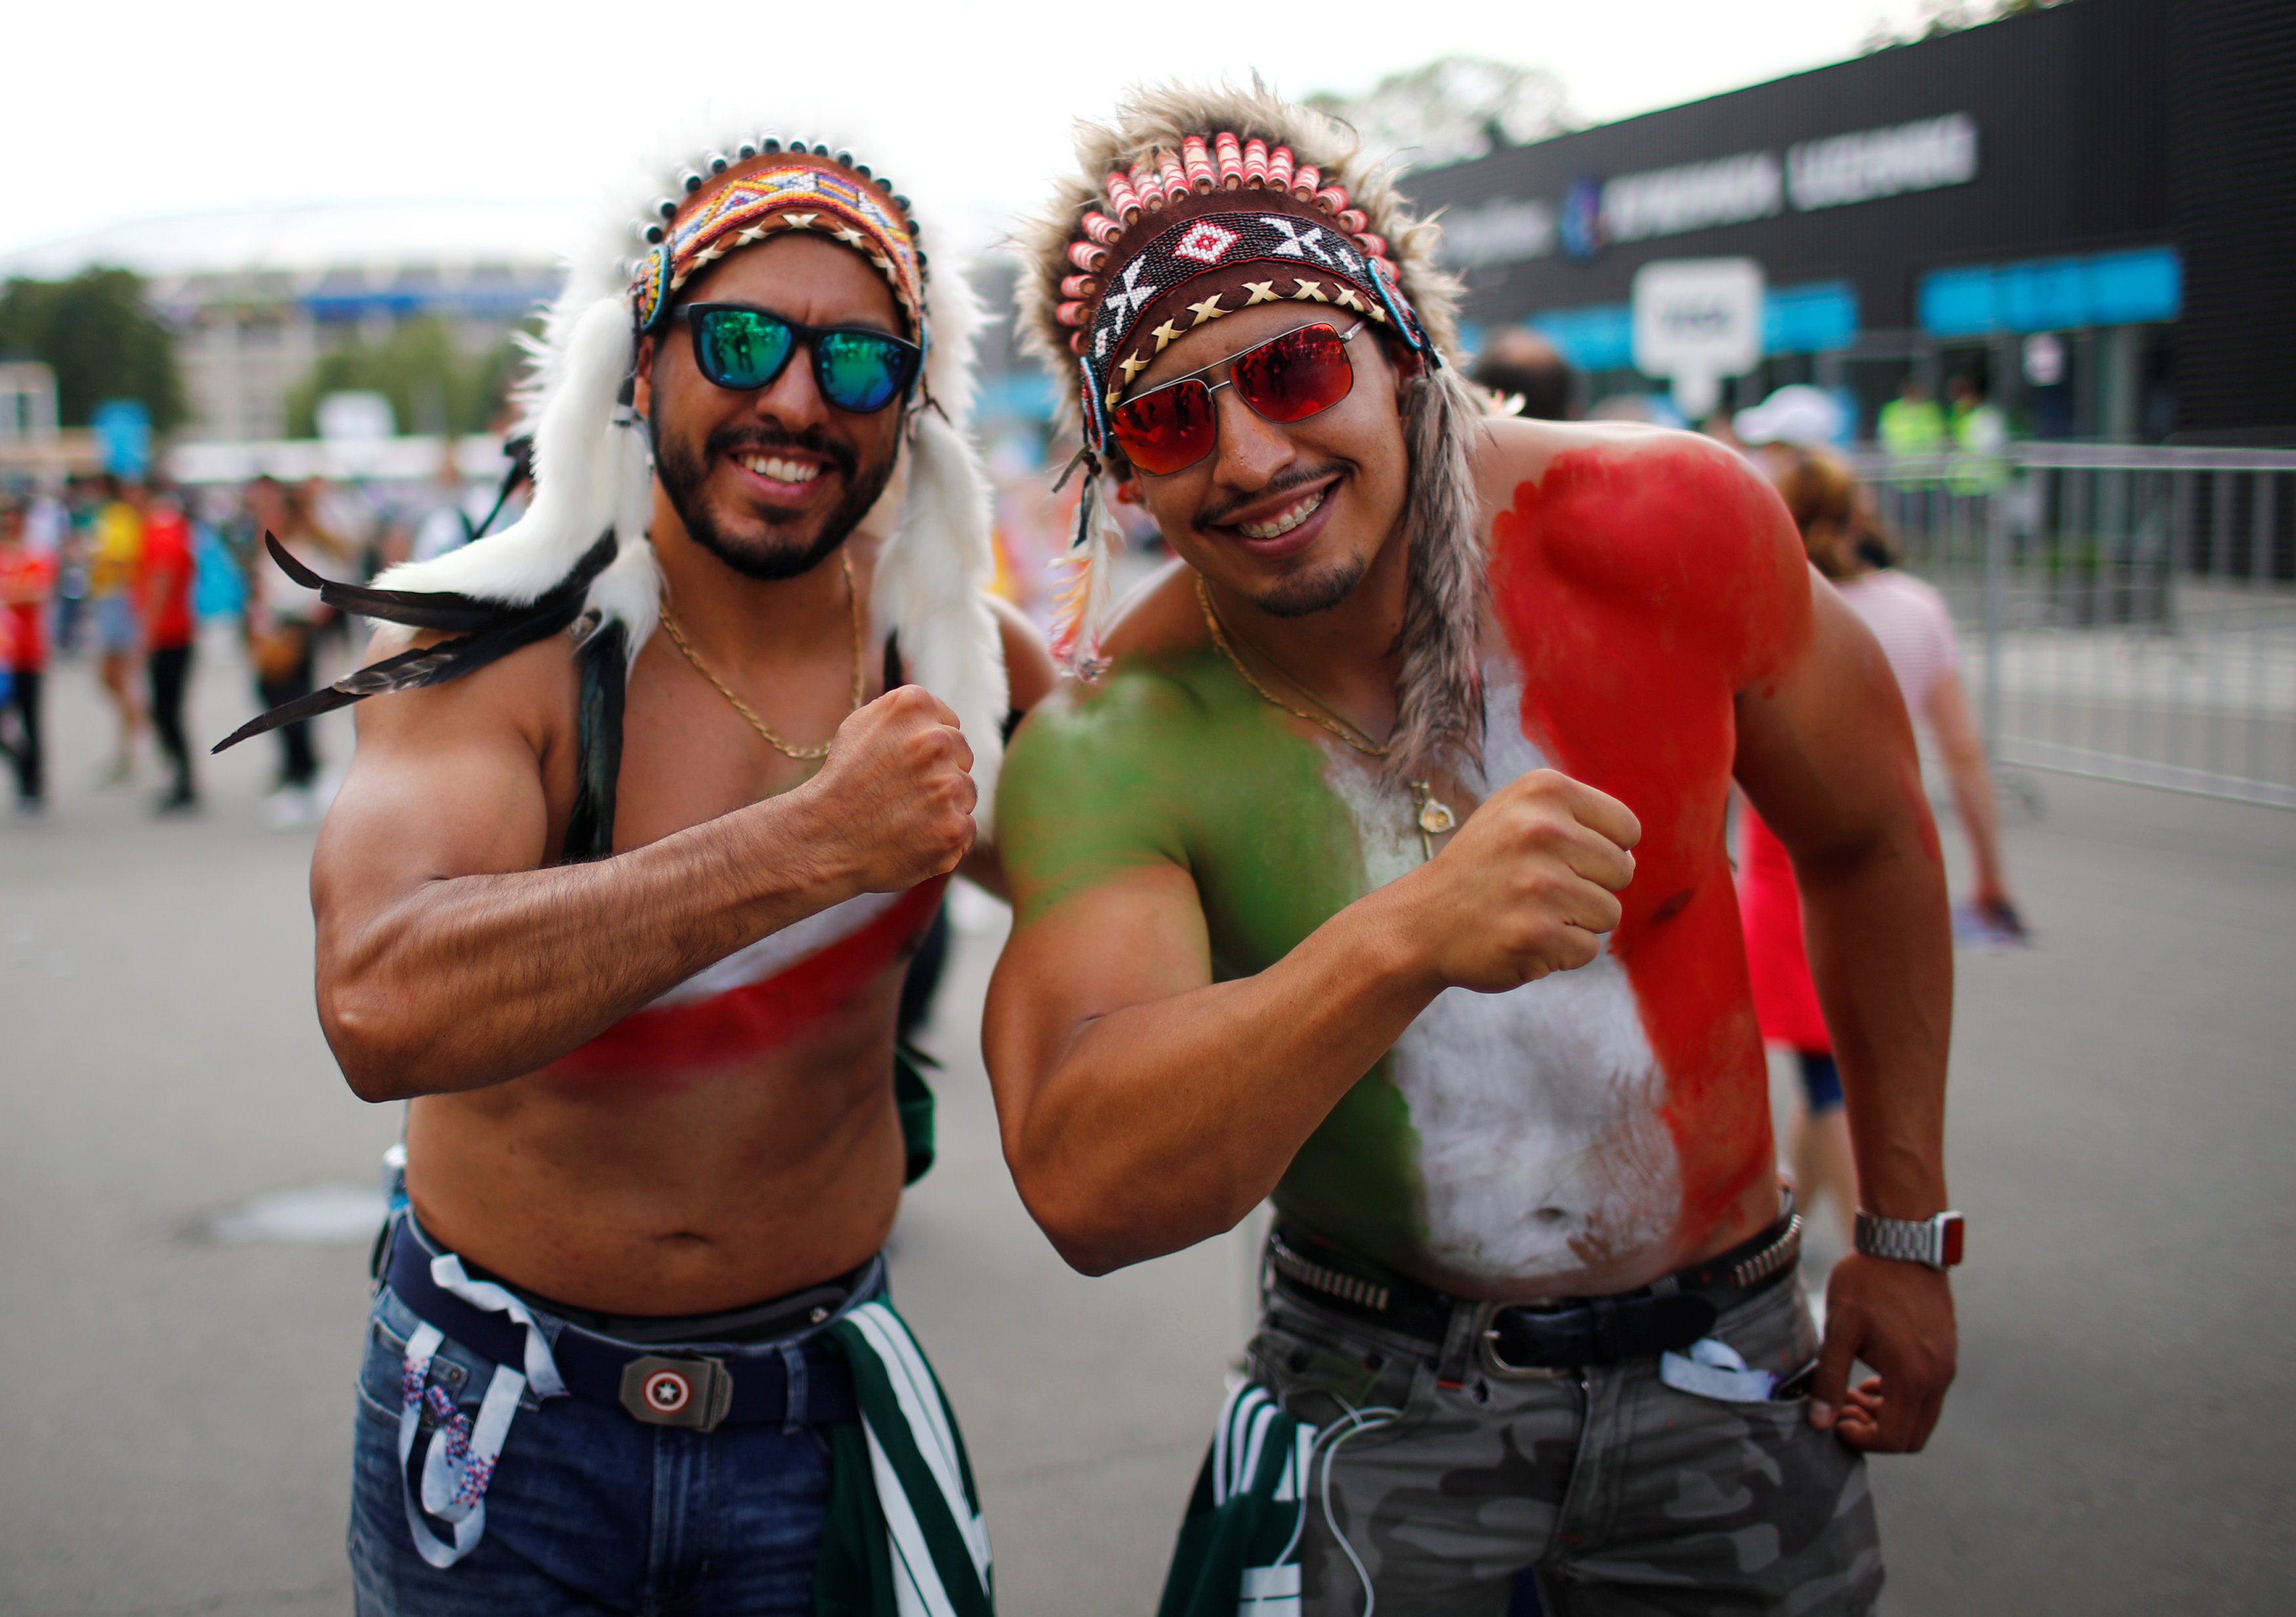  	مشجعان مكسيكيان يزينان جسديهما بألوان علم بيلادهما